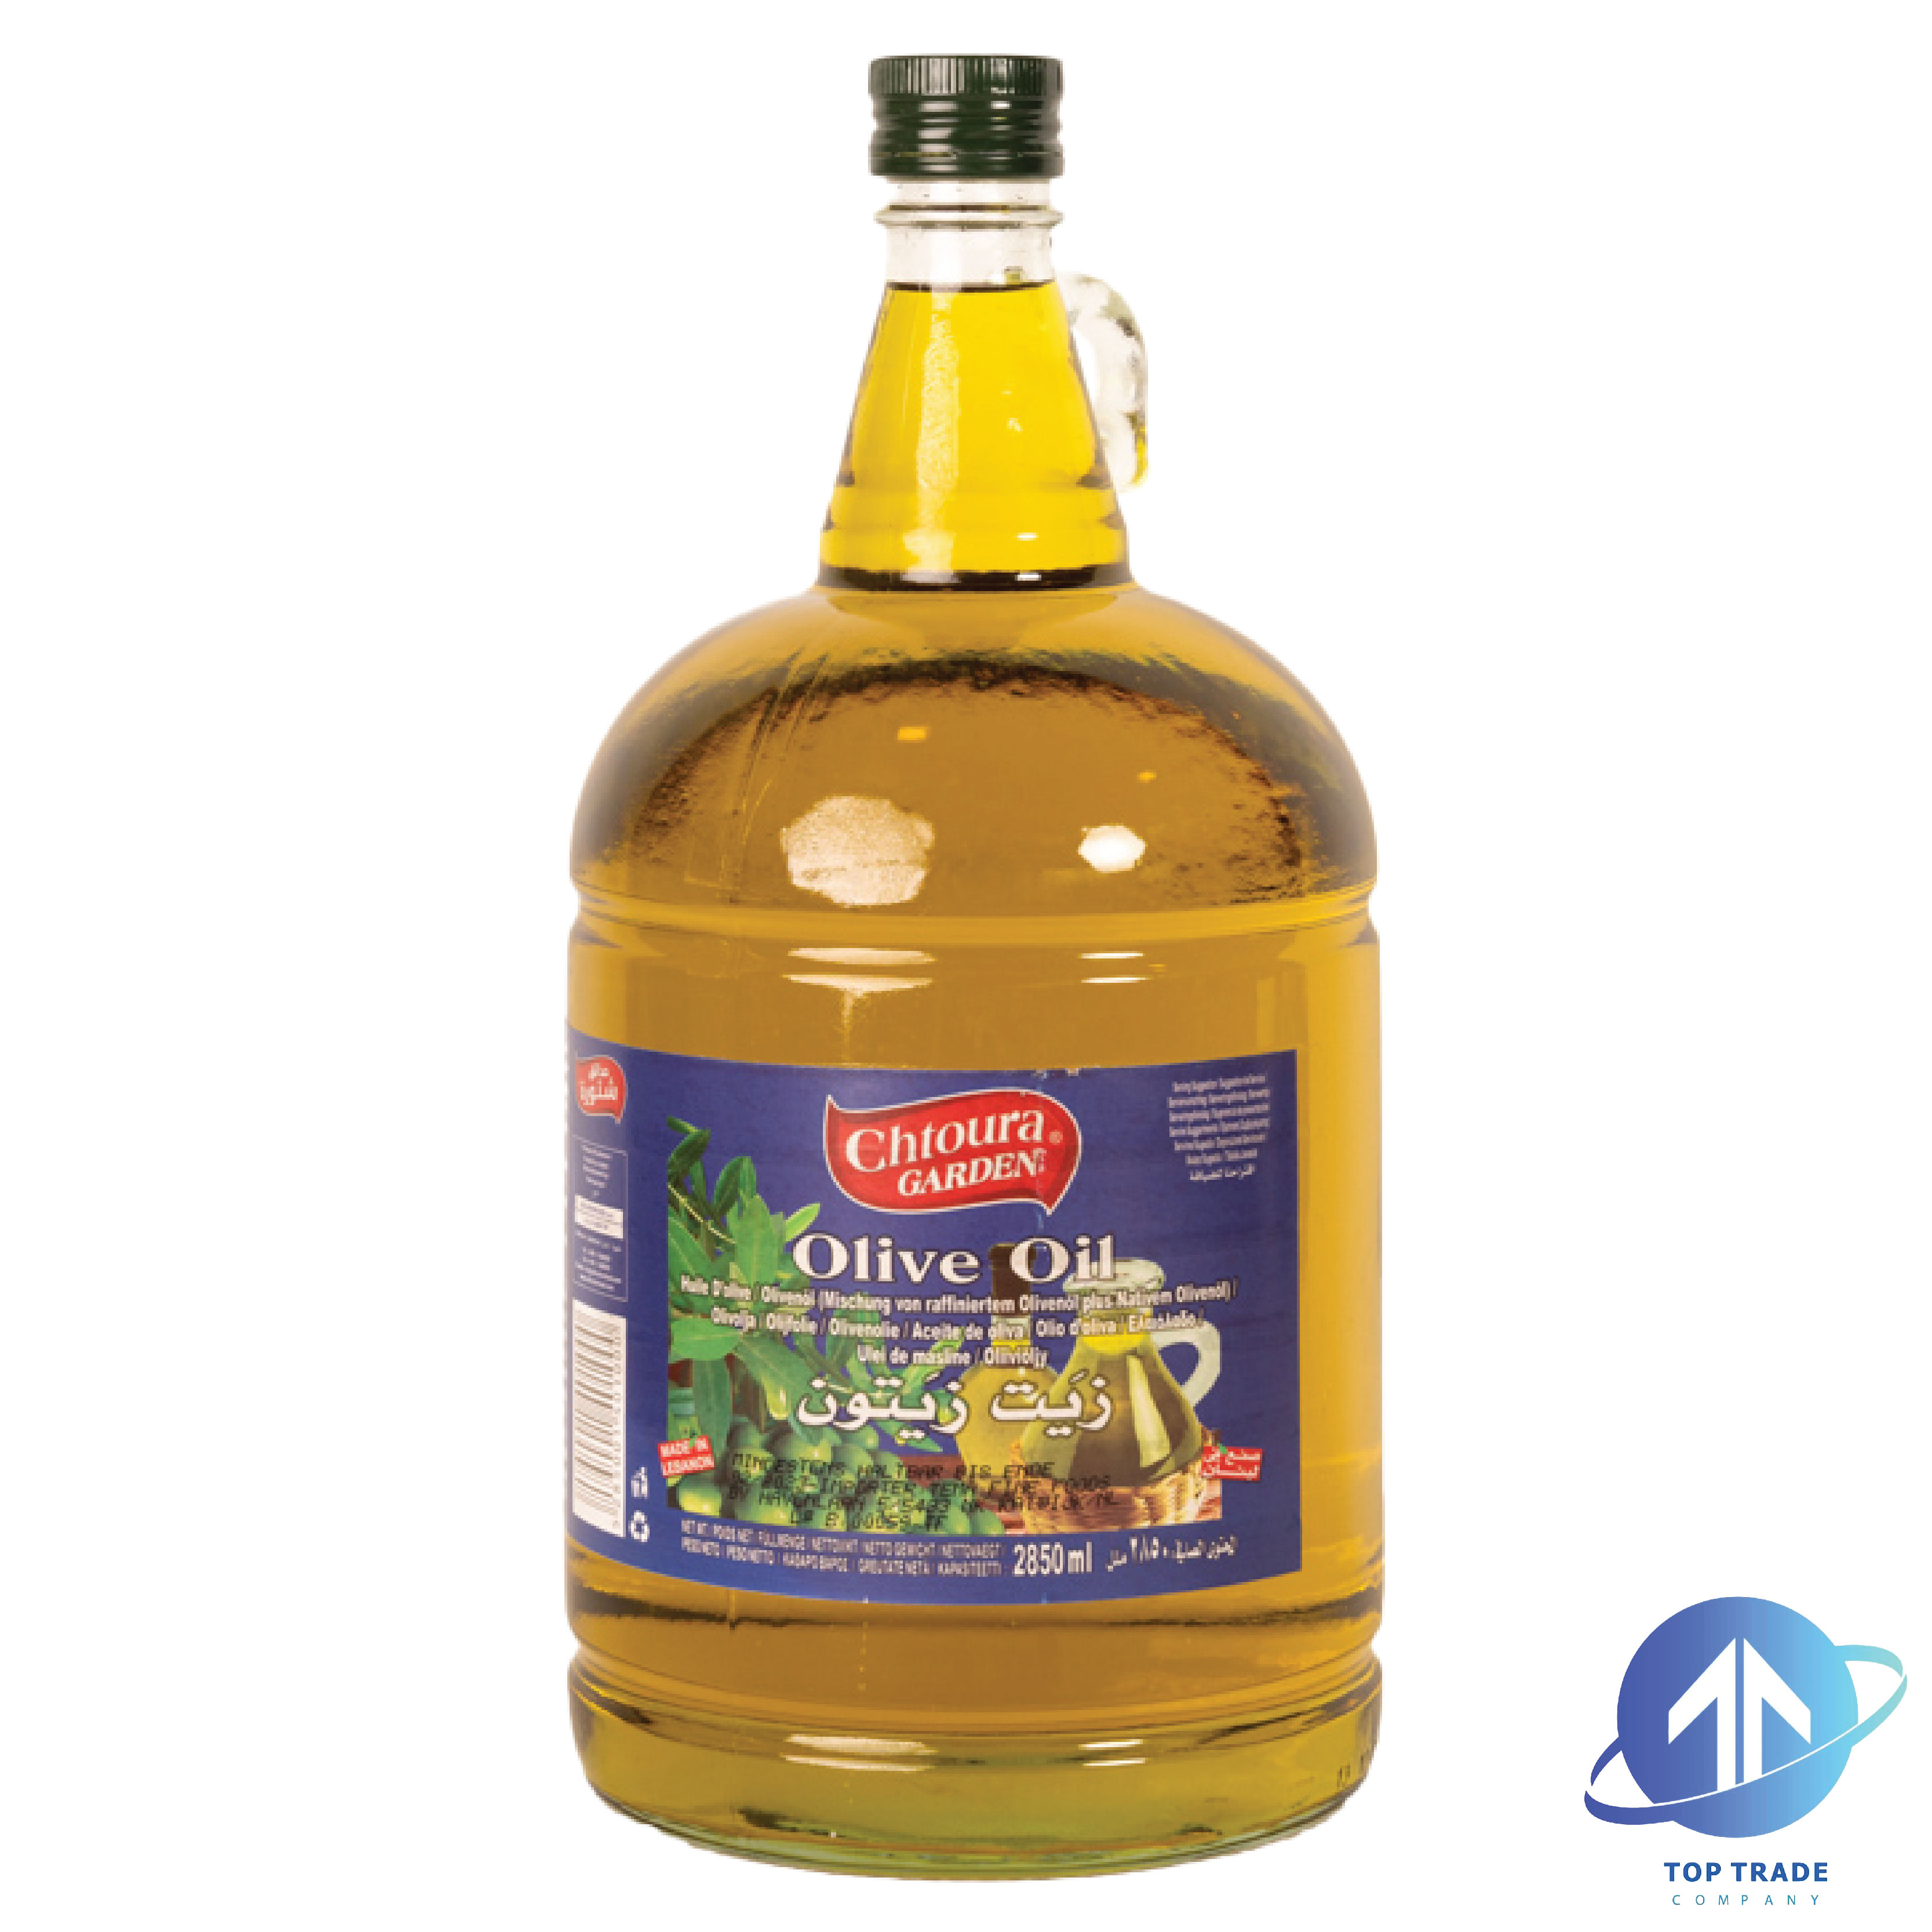 Chtoura garden Olive oil 2850ML